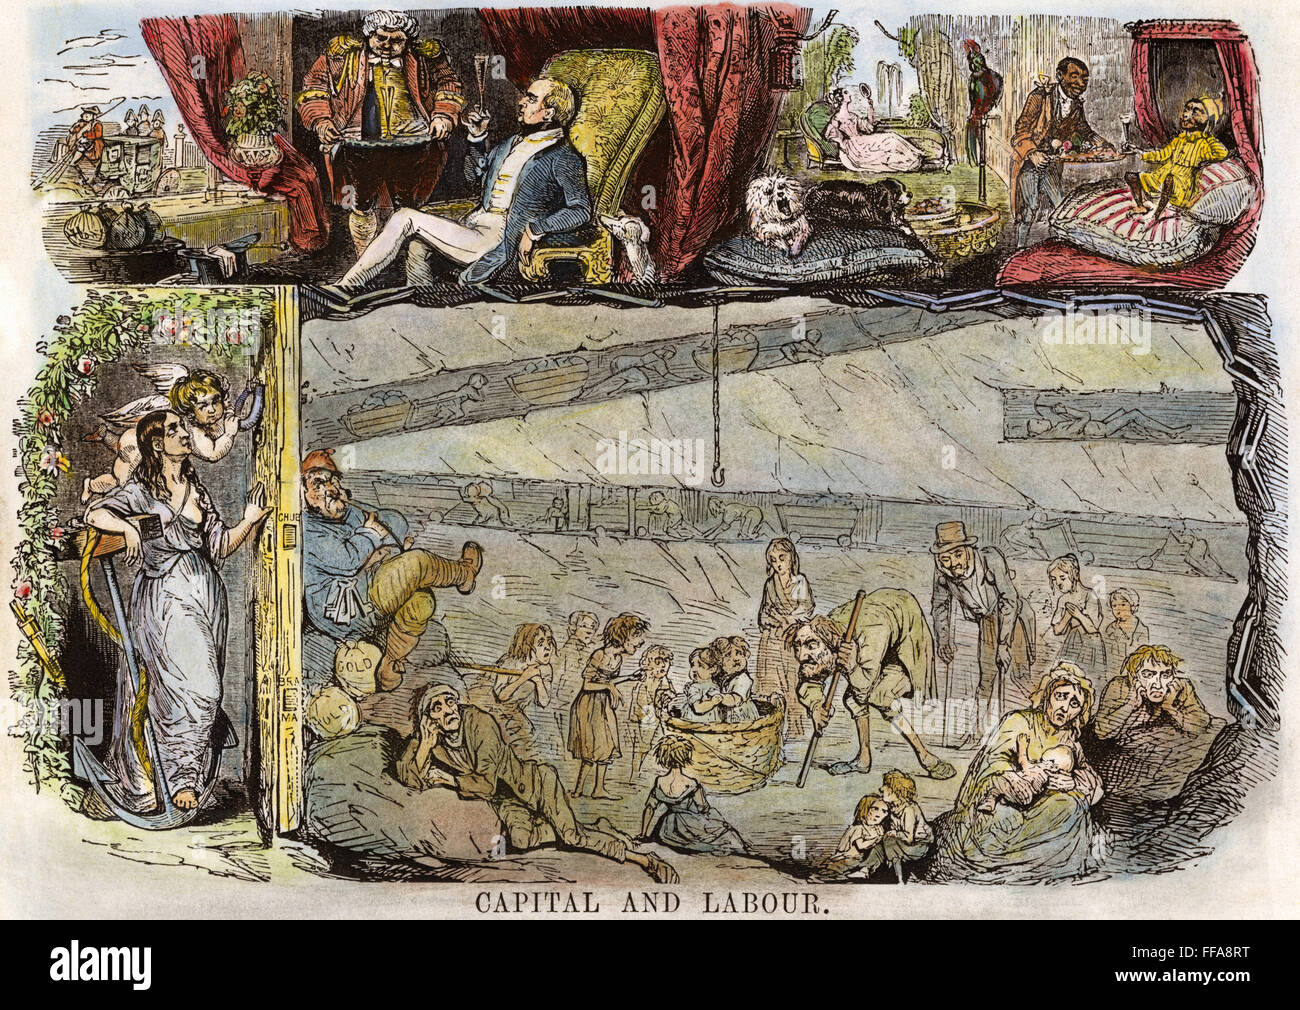 Caricature DU TRAVAIL, 1843. /N'le capital et le travail." Caricature de 'Punch', 1843, inspirée d'un rapport du gouvernement britannique sur l'horrible état de travailleurs dans les mines de charbon. Banque D'Images